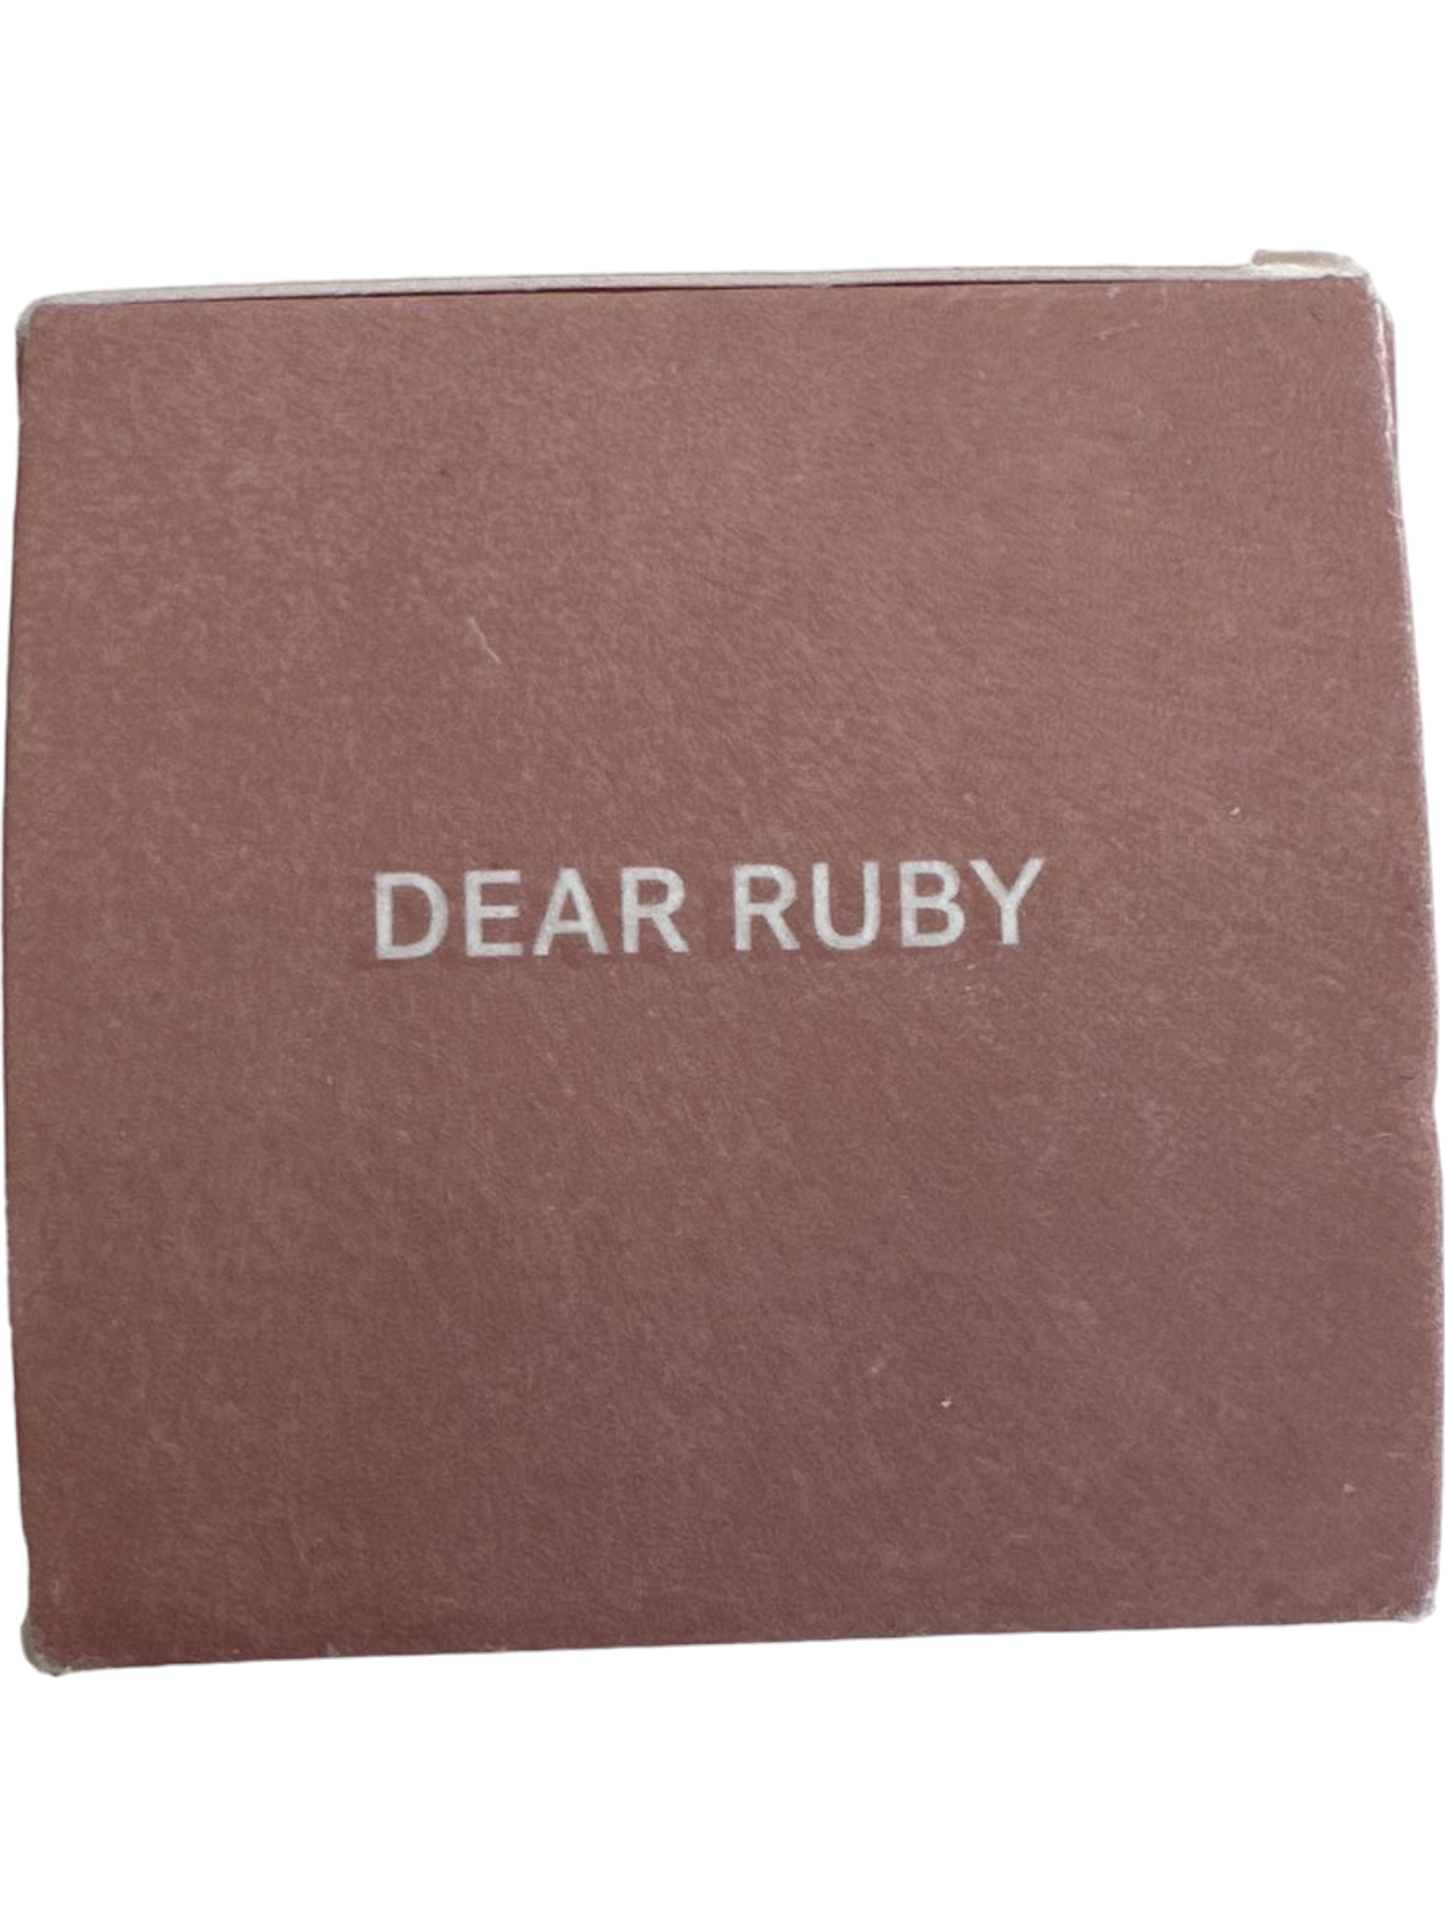 Ilia Beauty Multi-Stick Dear Ruby Sealed